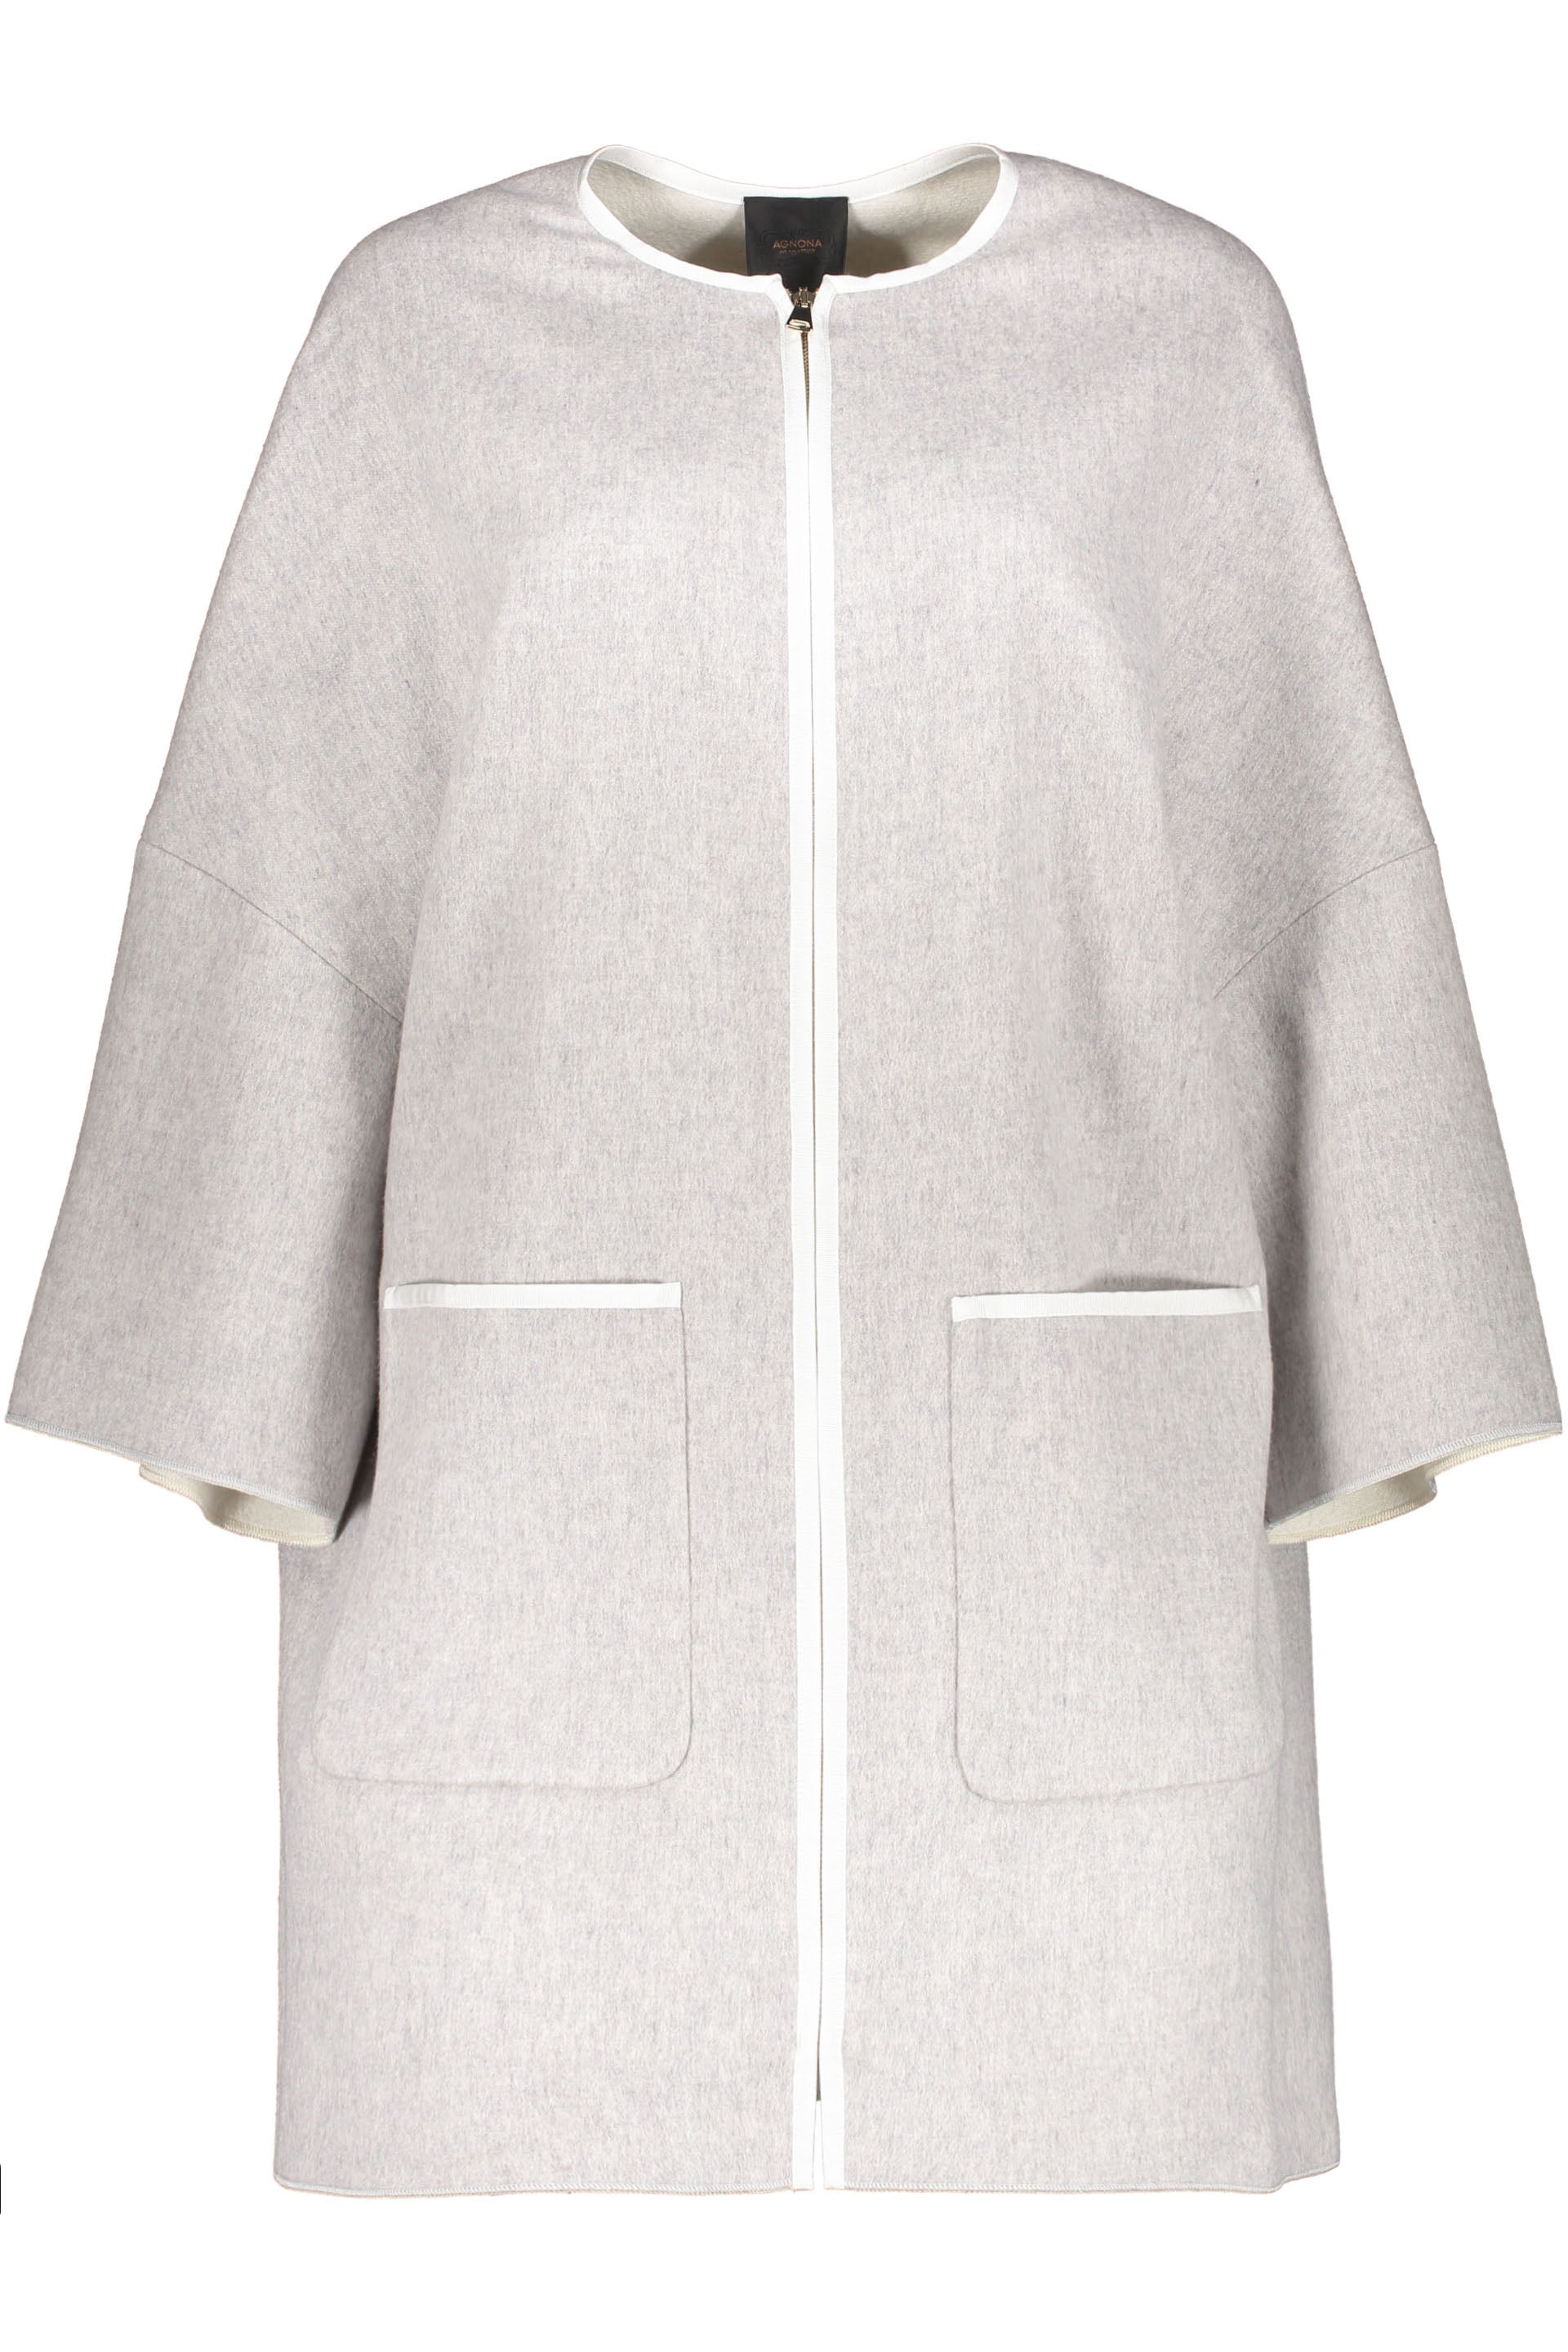 Agnona-OUTLET-SALE-Cashmere-jacket-Jacken-Mantel-L-ARCHIVE-COLLECTION.jpg